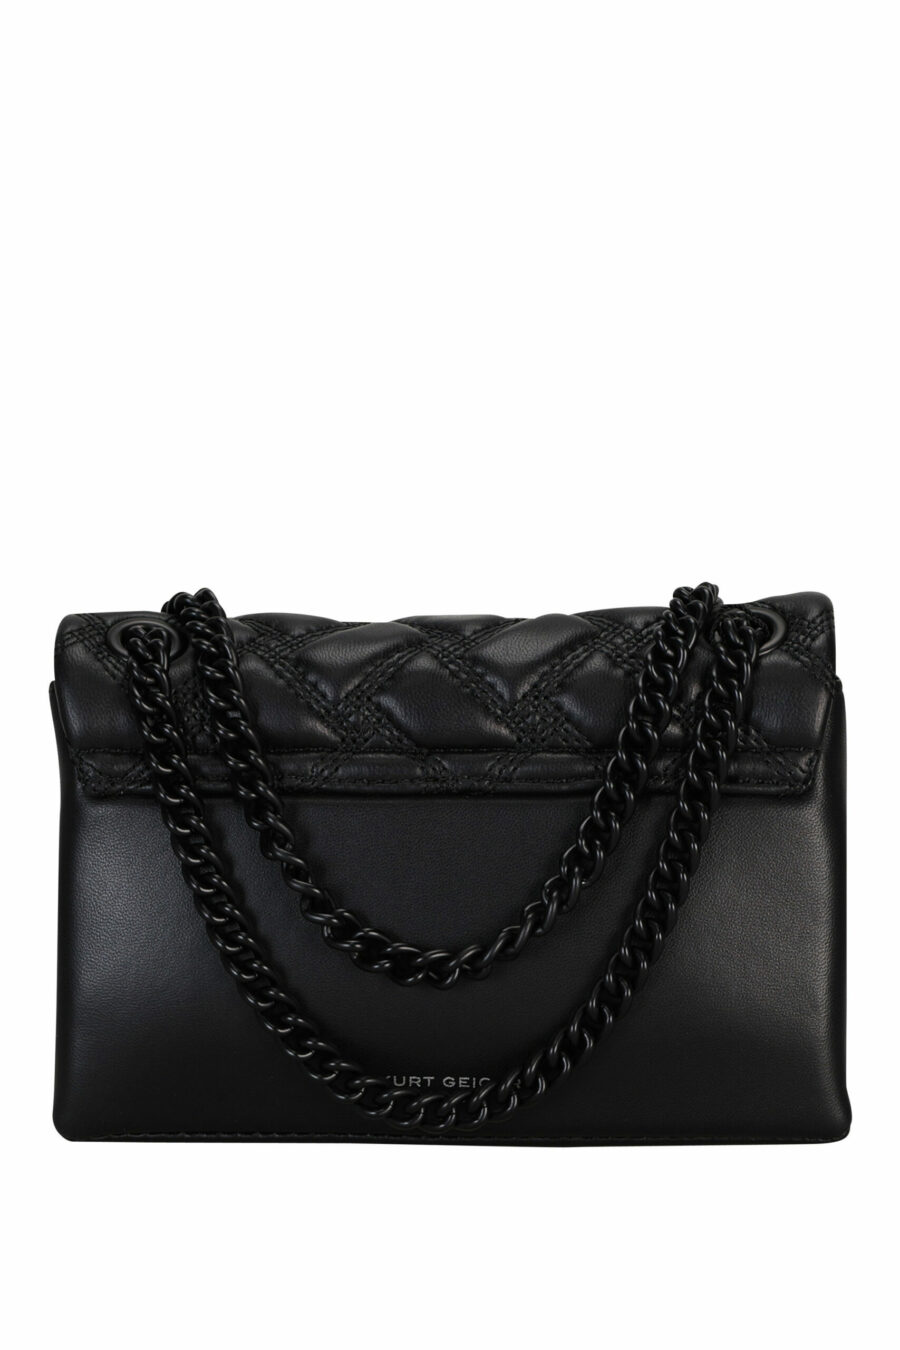 Mini sac à bandoulière noir avec lignes diagonales et logo de l'aigle noir avec cristaux noirs - 5020413709135 2 échelles